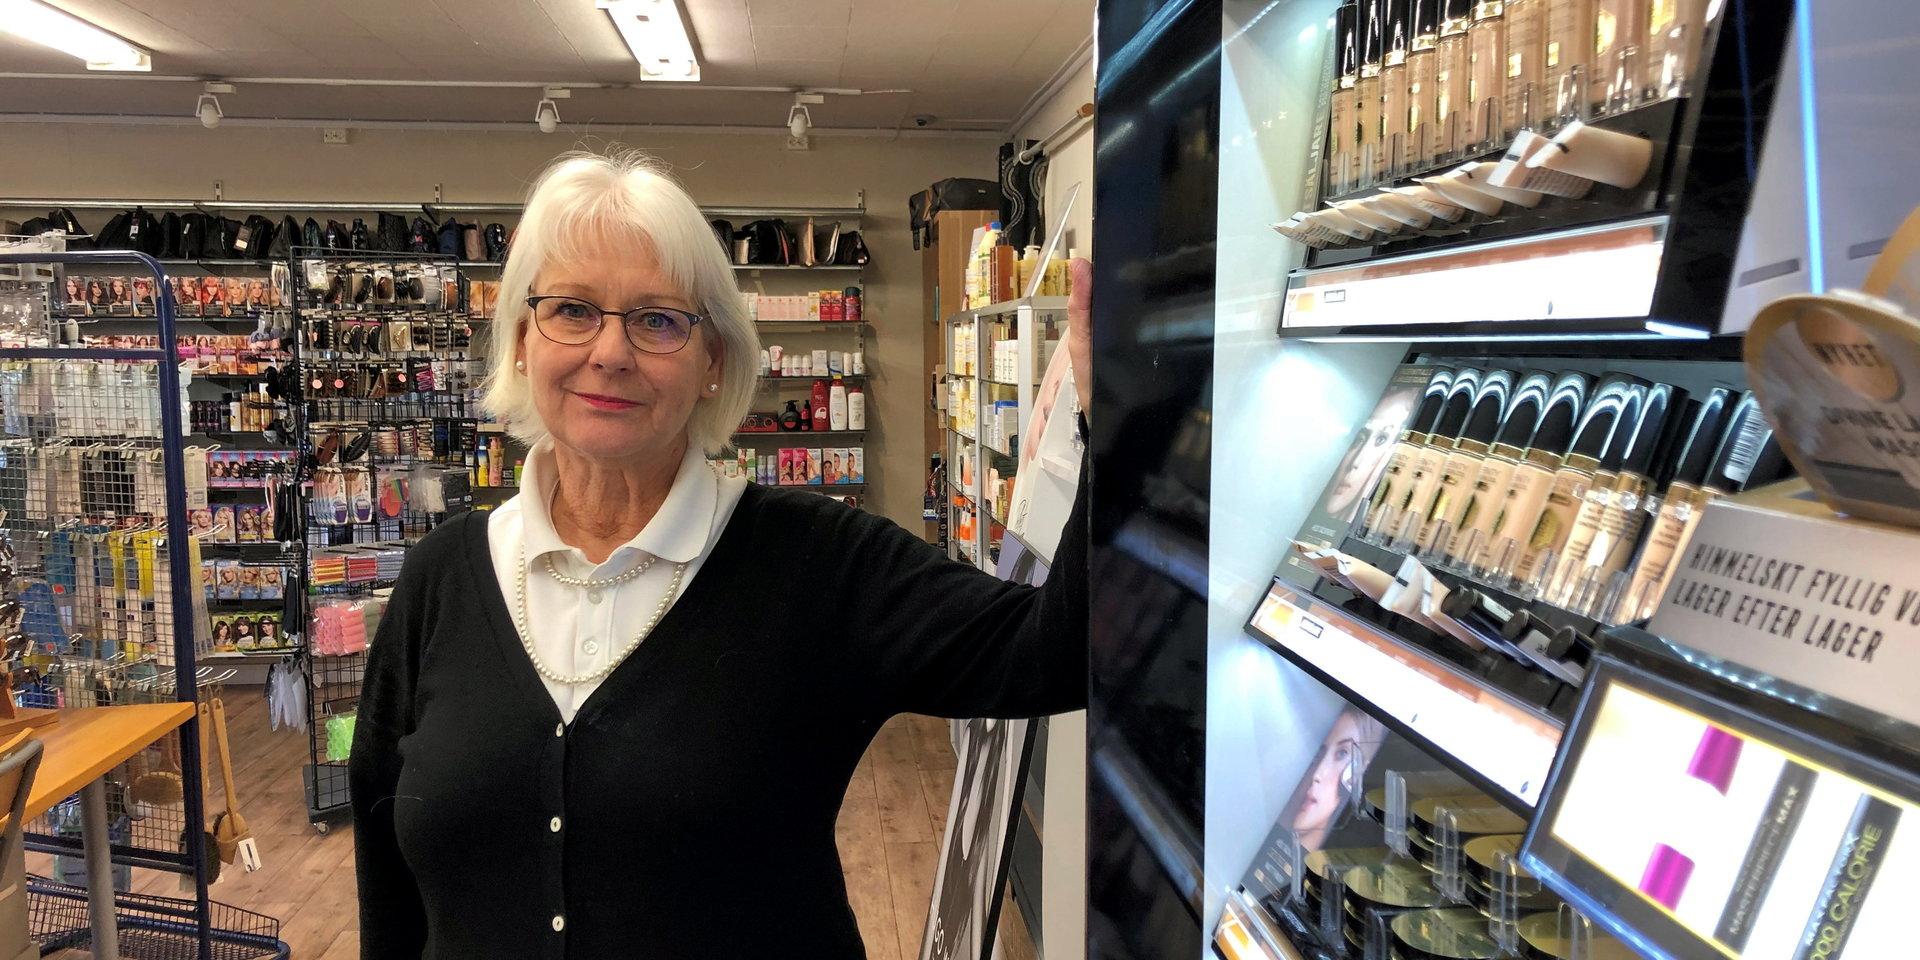 I 23 år har Siv Thörnell drivit sin butik Thörnells Parfymeri på Storgatan i Herrljunga. Nu har hon bestämt sig för att sälja och gå i pension. 